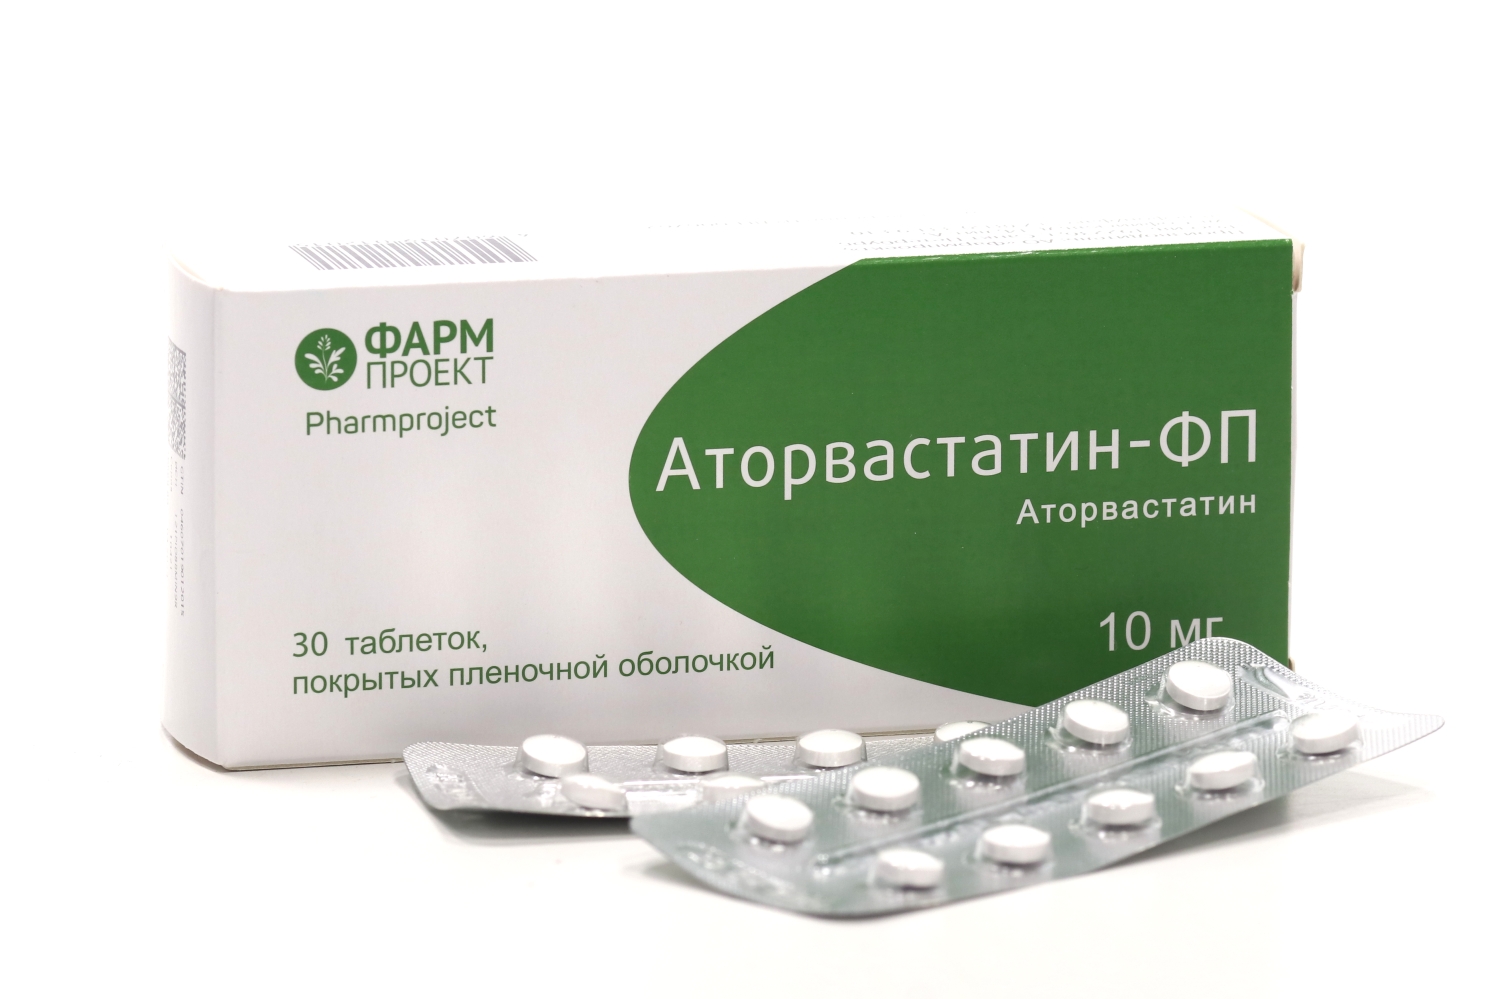 Аторвастатин побочные действия для мужчин. Аторвастатин оригинальный. Аторвастатин 60 мг. Название оригинального аторвастатина. Аторвастатин 40 мг.